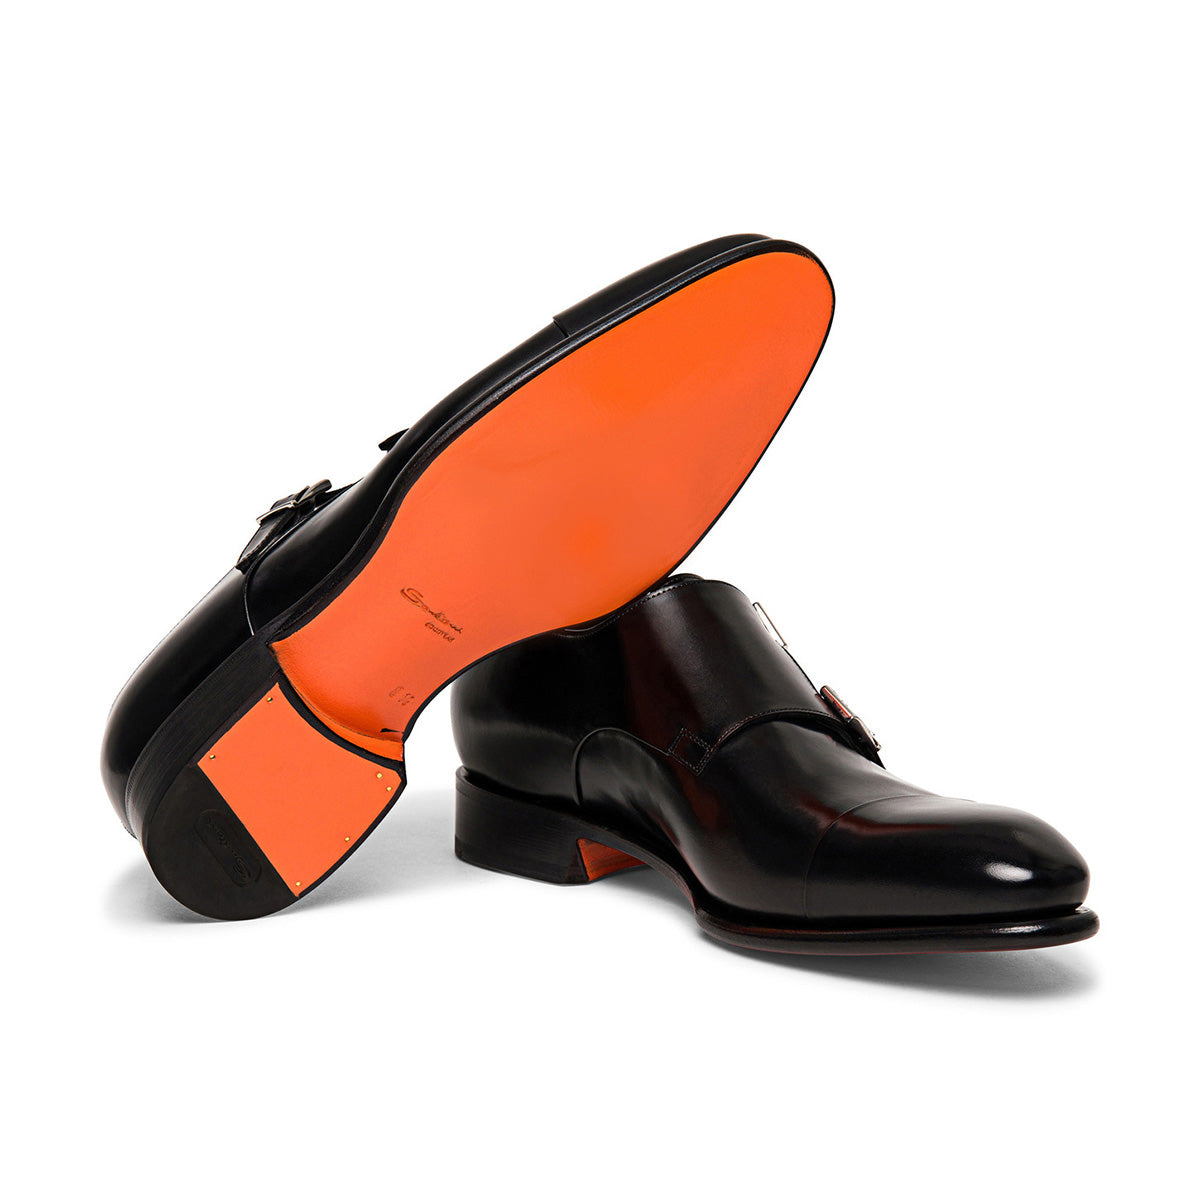 Black Double-Buckle Leather Shoes  Santoni   